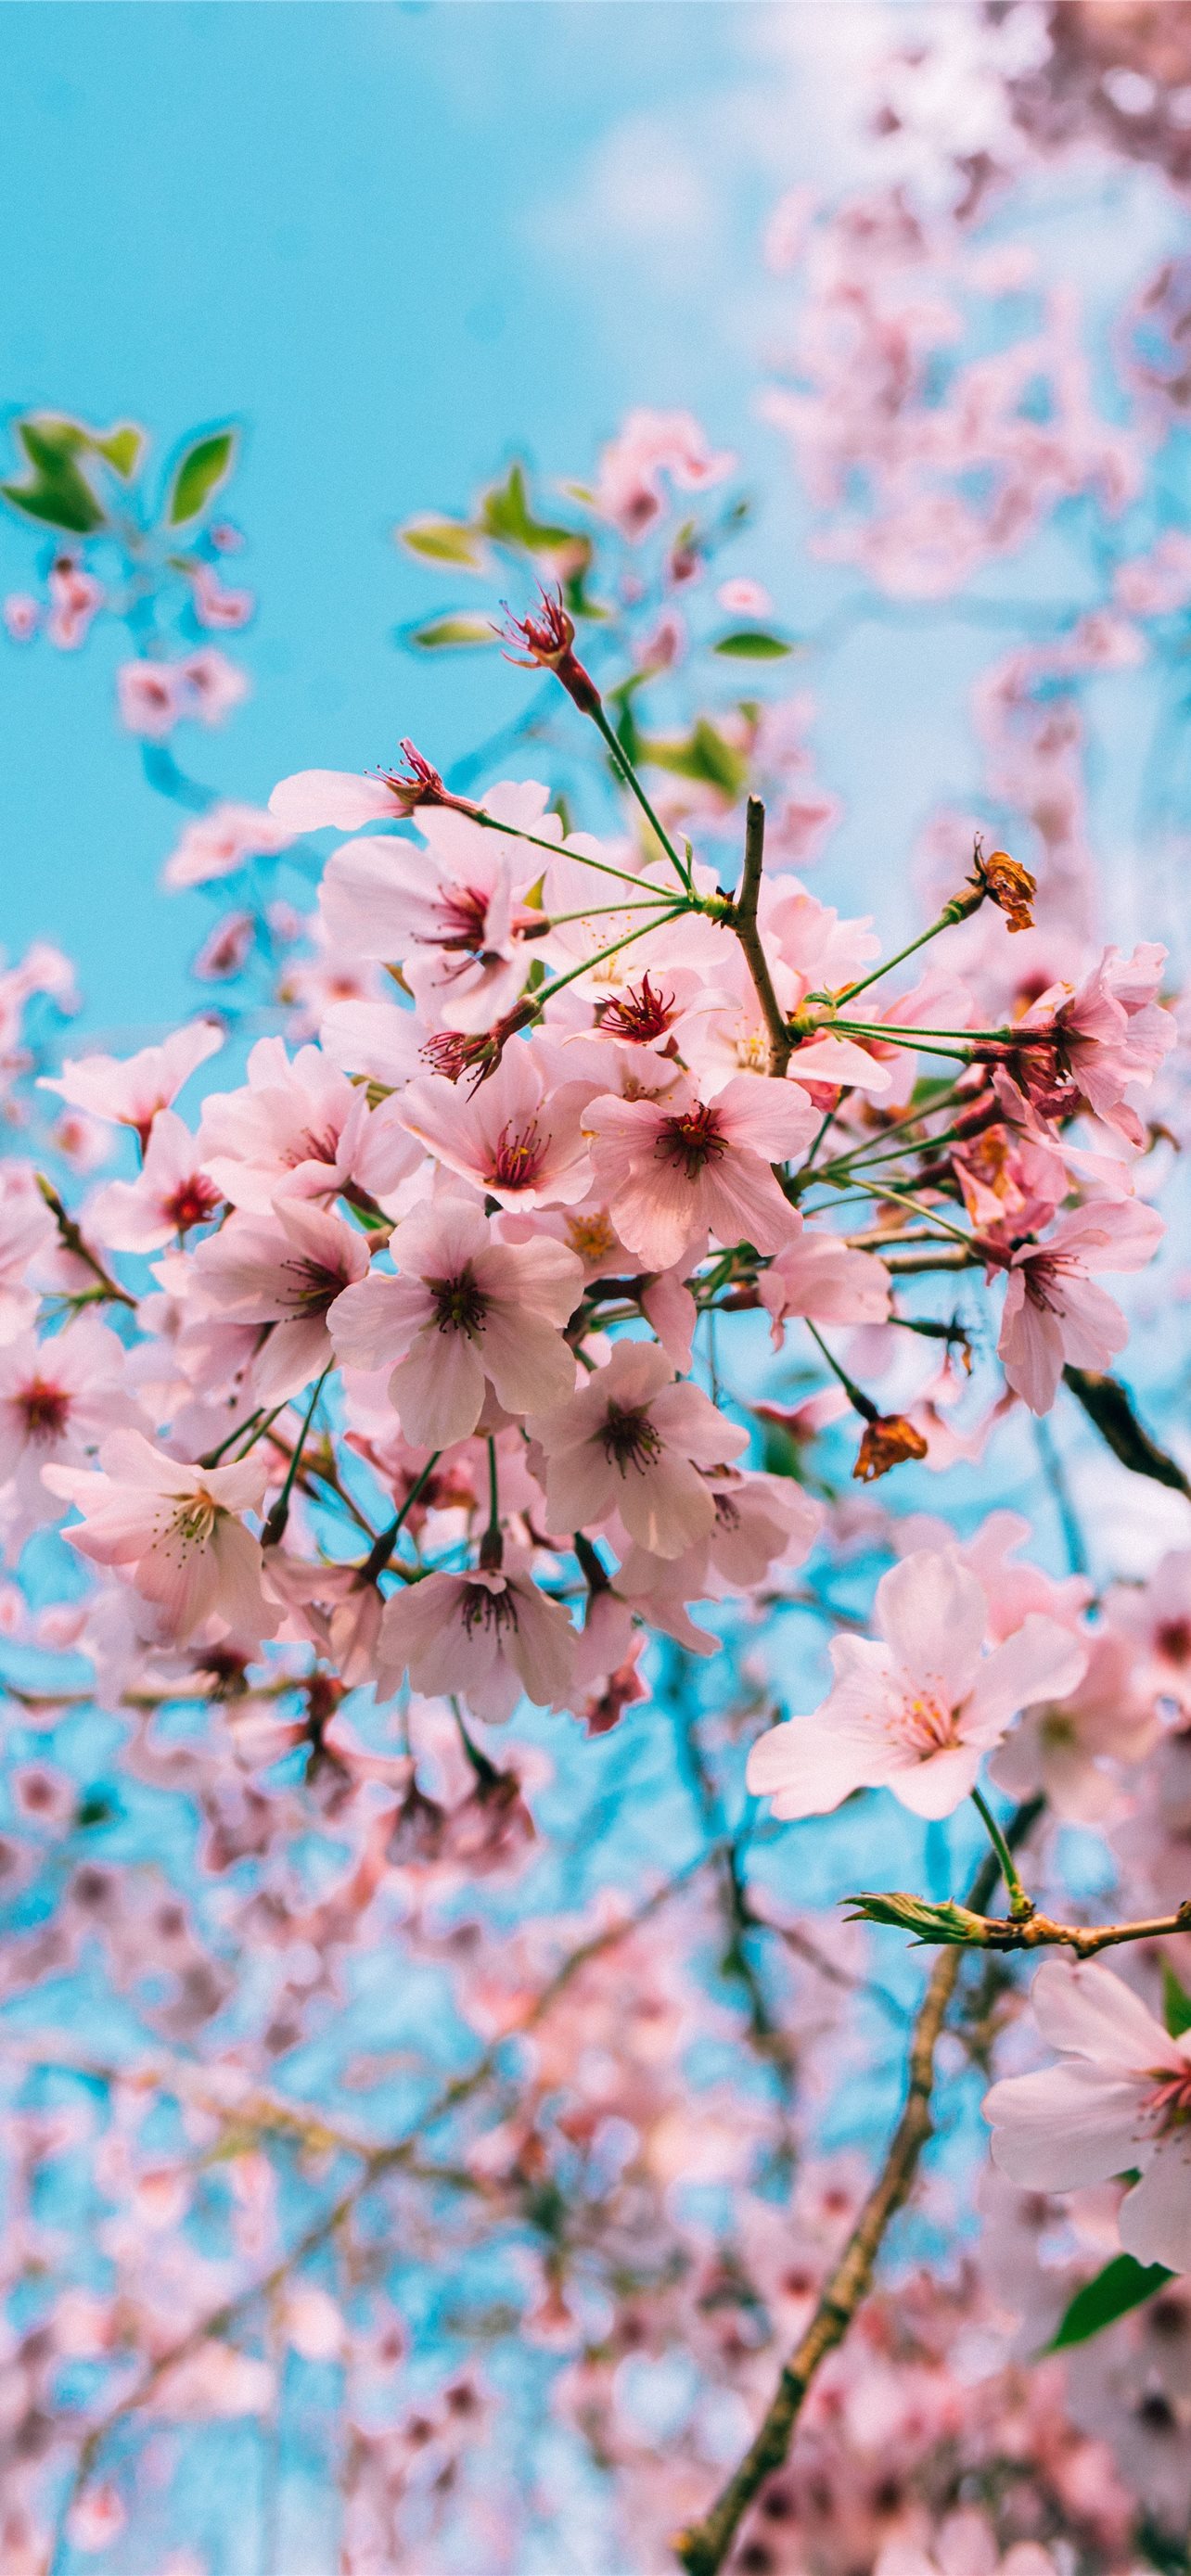 Late Sakura Blooms Mobile Wallpaper Images Free Download on Lovepik |  400372724